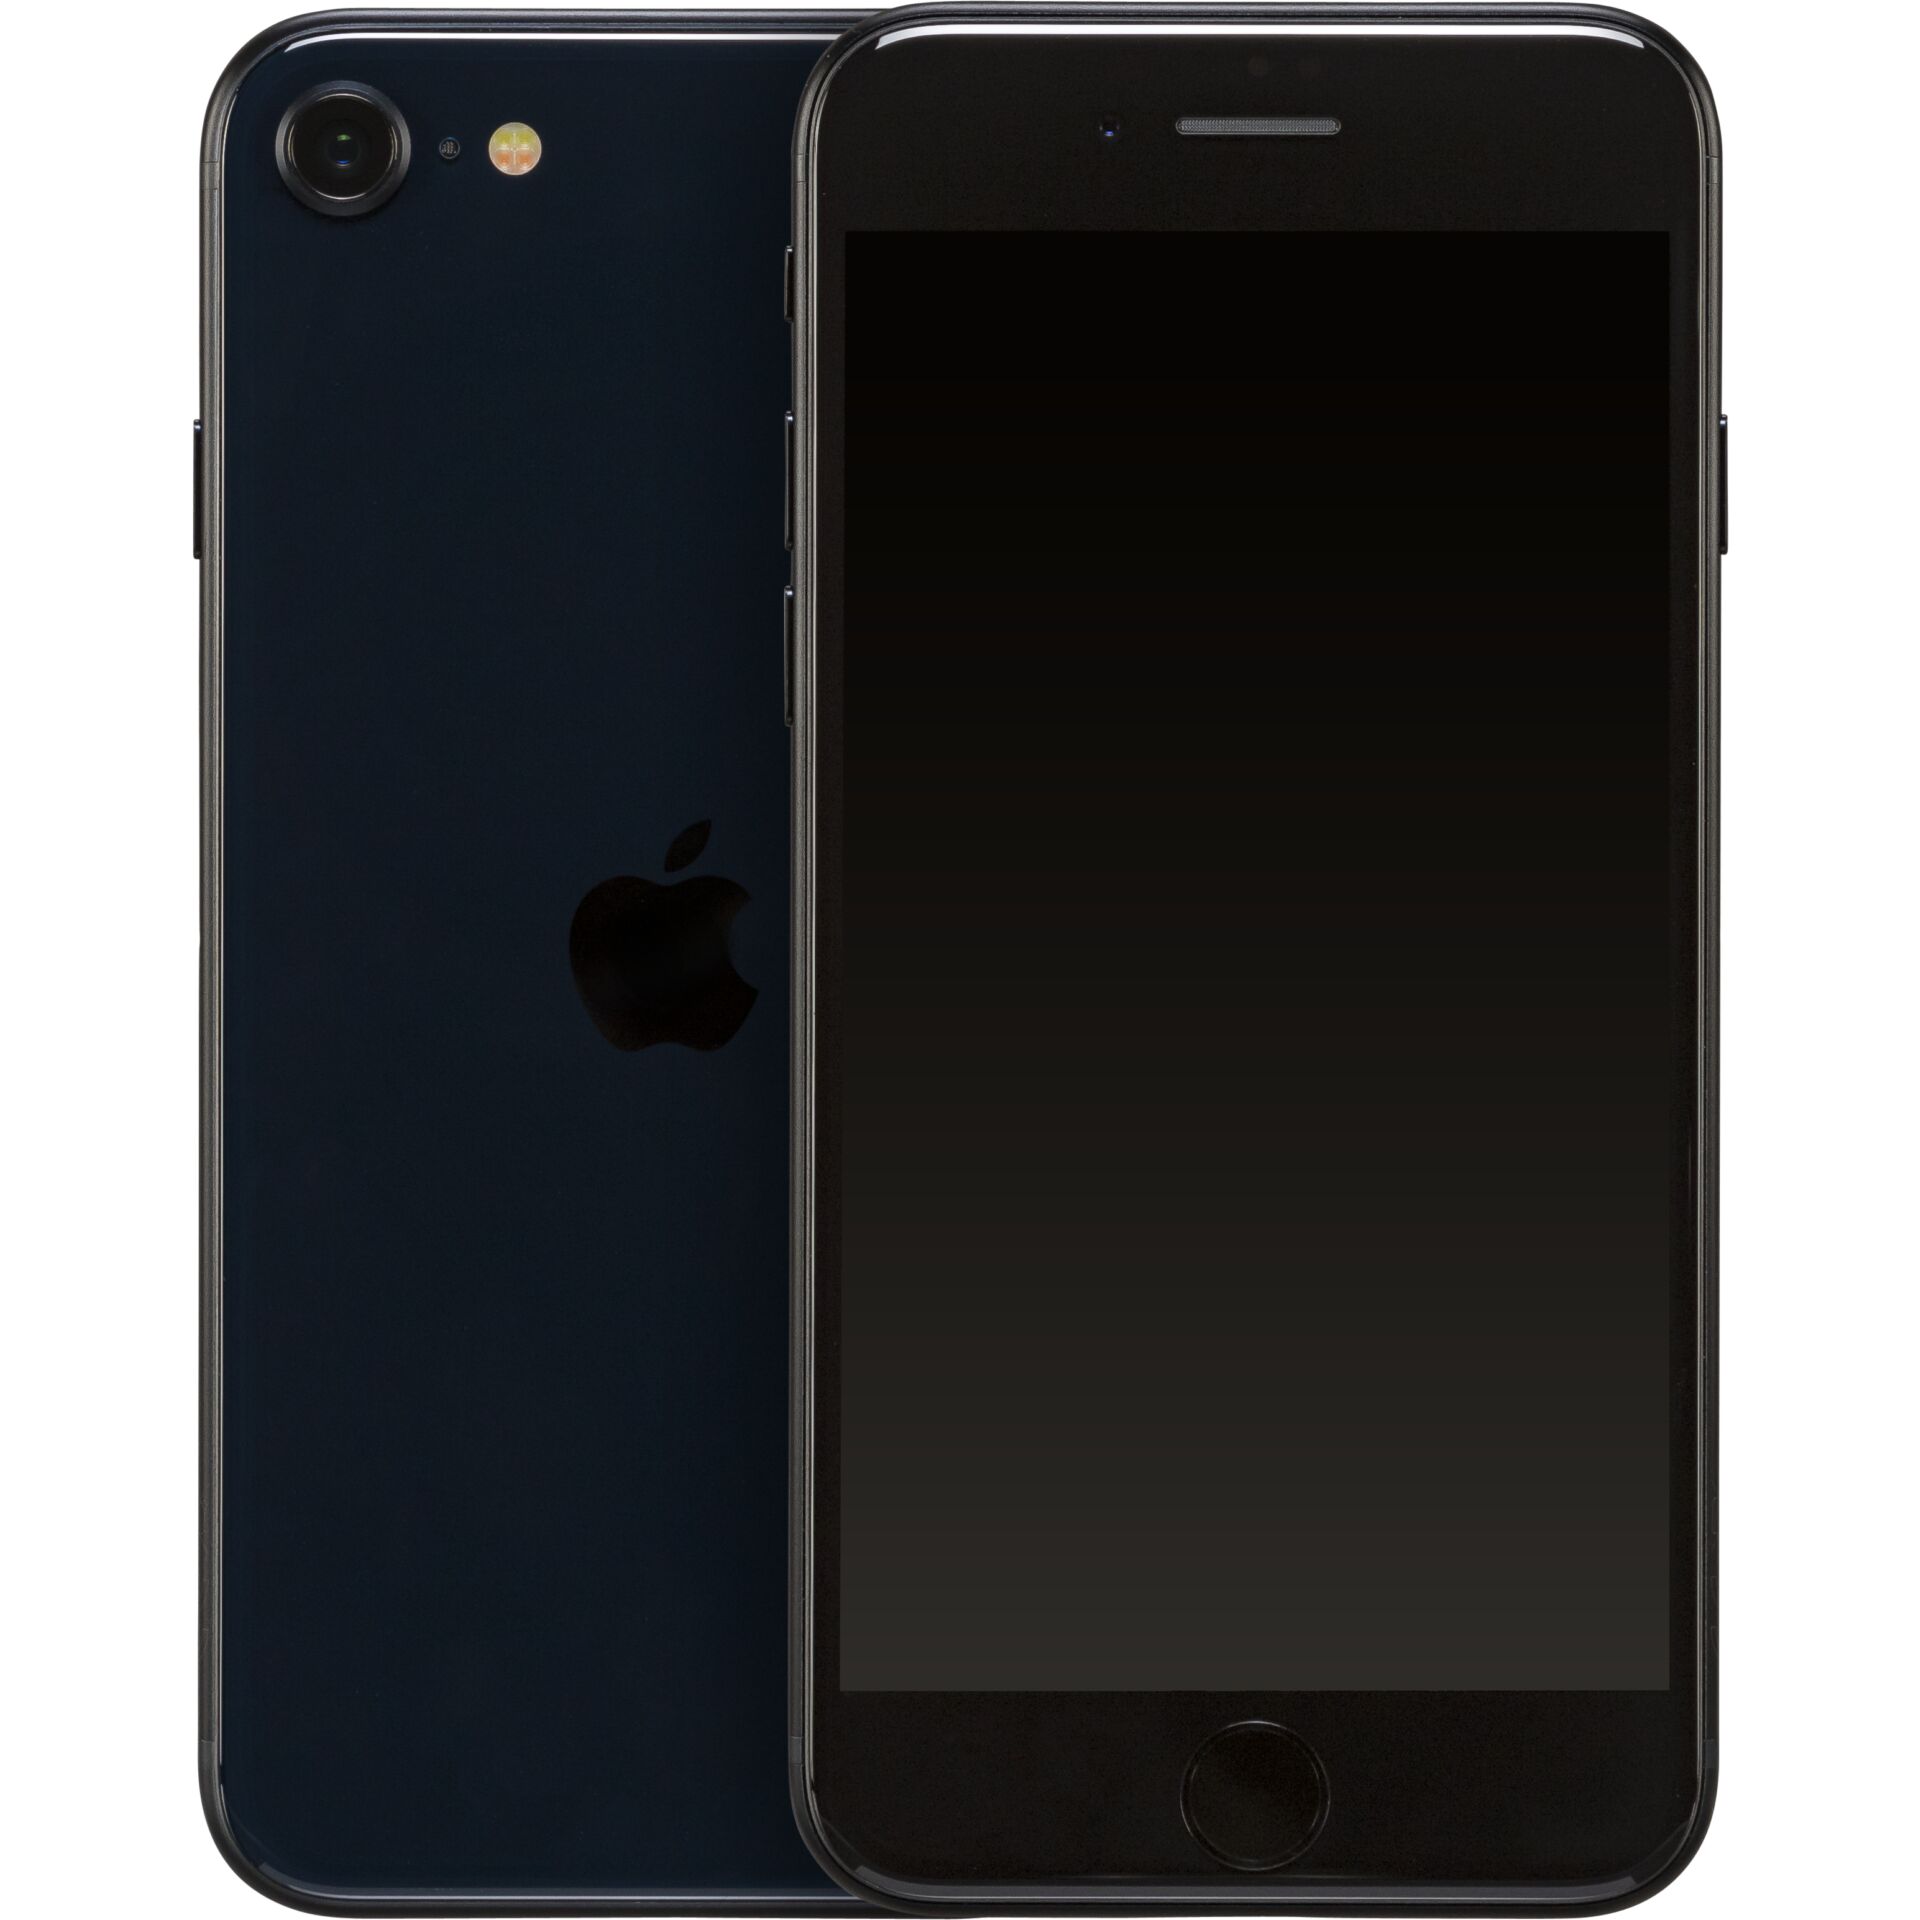 Apple iPhone SE 11,9 cm (4.7) Dual-SIM iOS 15 5G 64 GB Schwarz